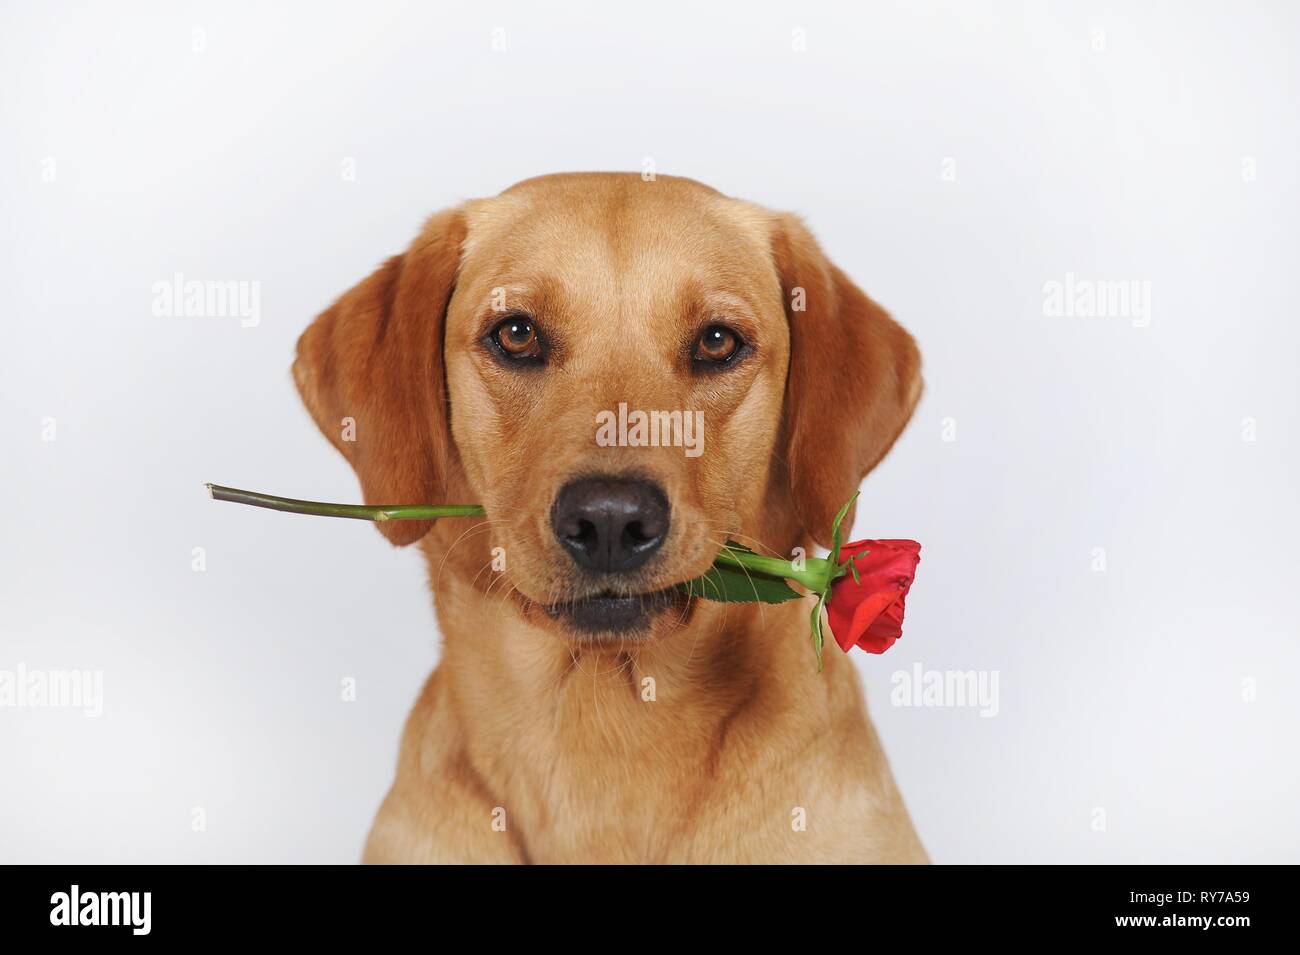 Labrador Retriever, jaune, bitch, détient rose rouge dans la bouche, fond blanc, Autriche Banque D'Images